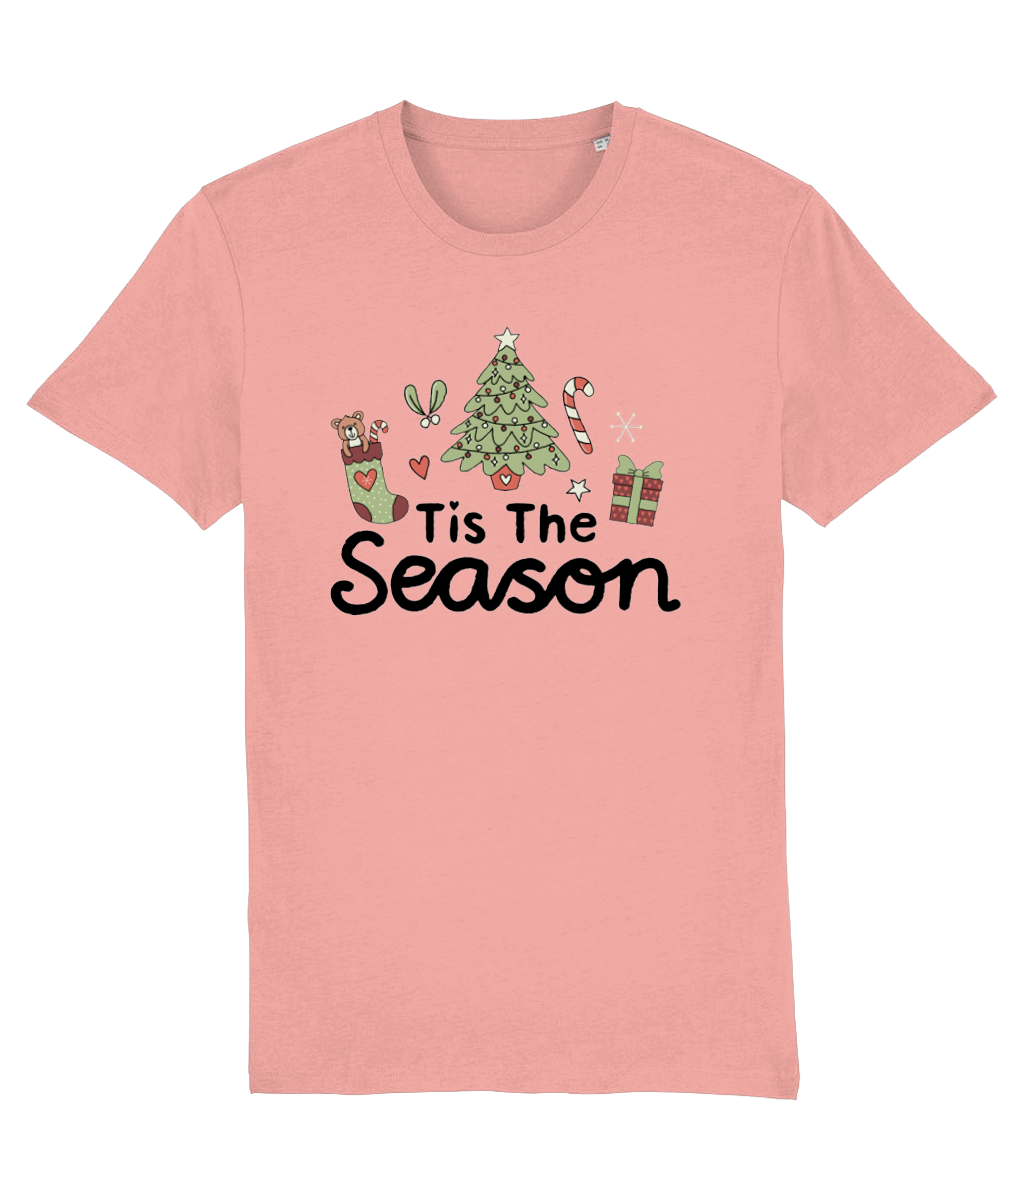 Tis The Season - Adult T-Shirt - Light Multi Colour Available